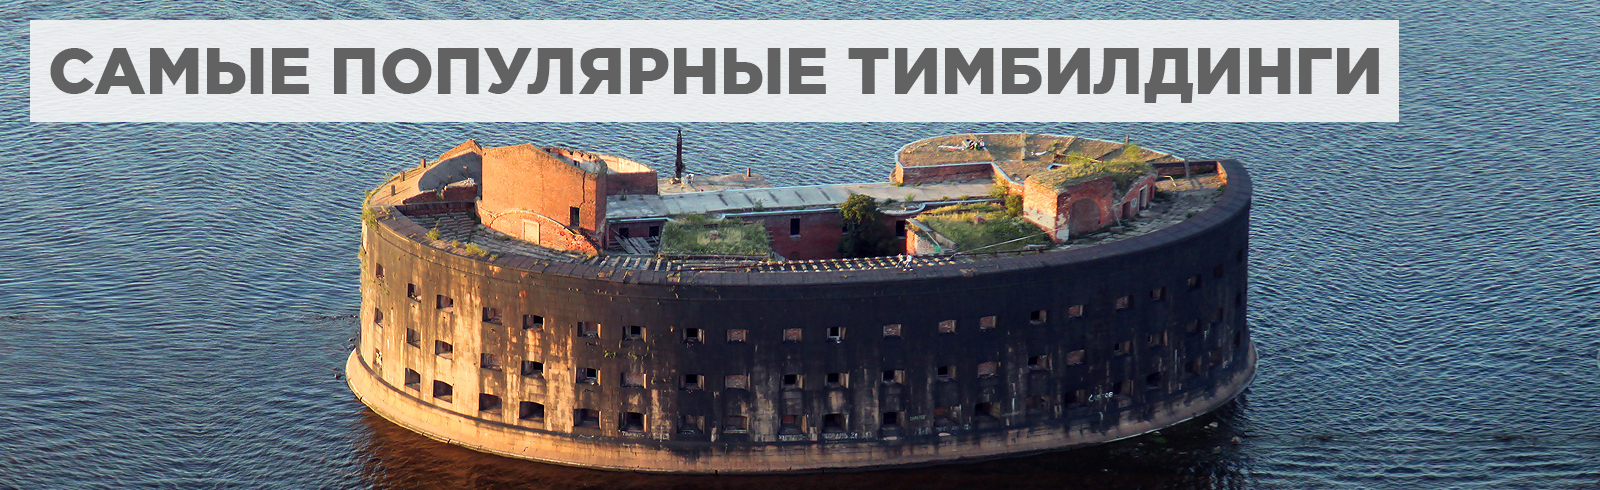 Популярный тимбилдинг в Санкт-Петербурге